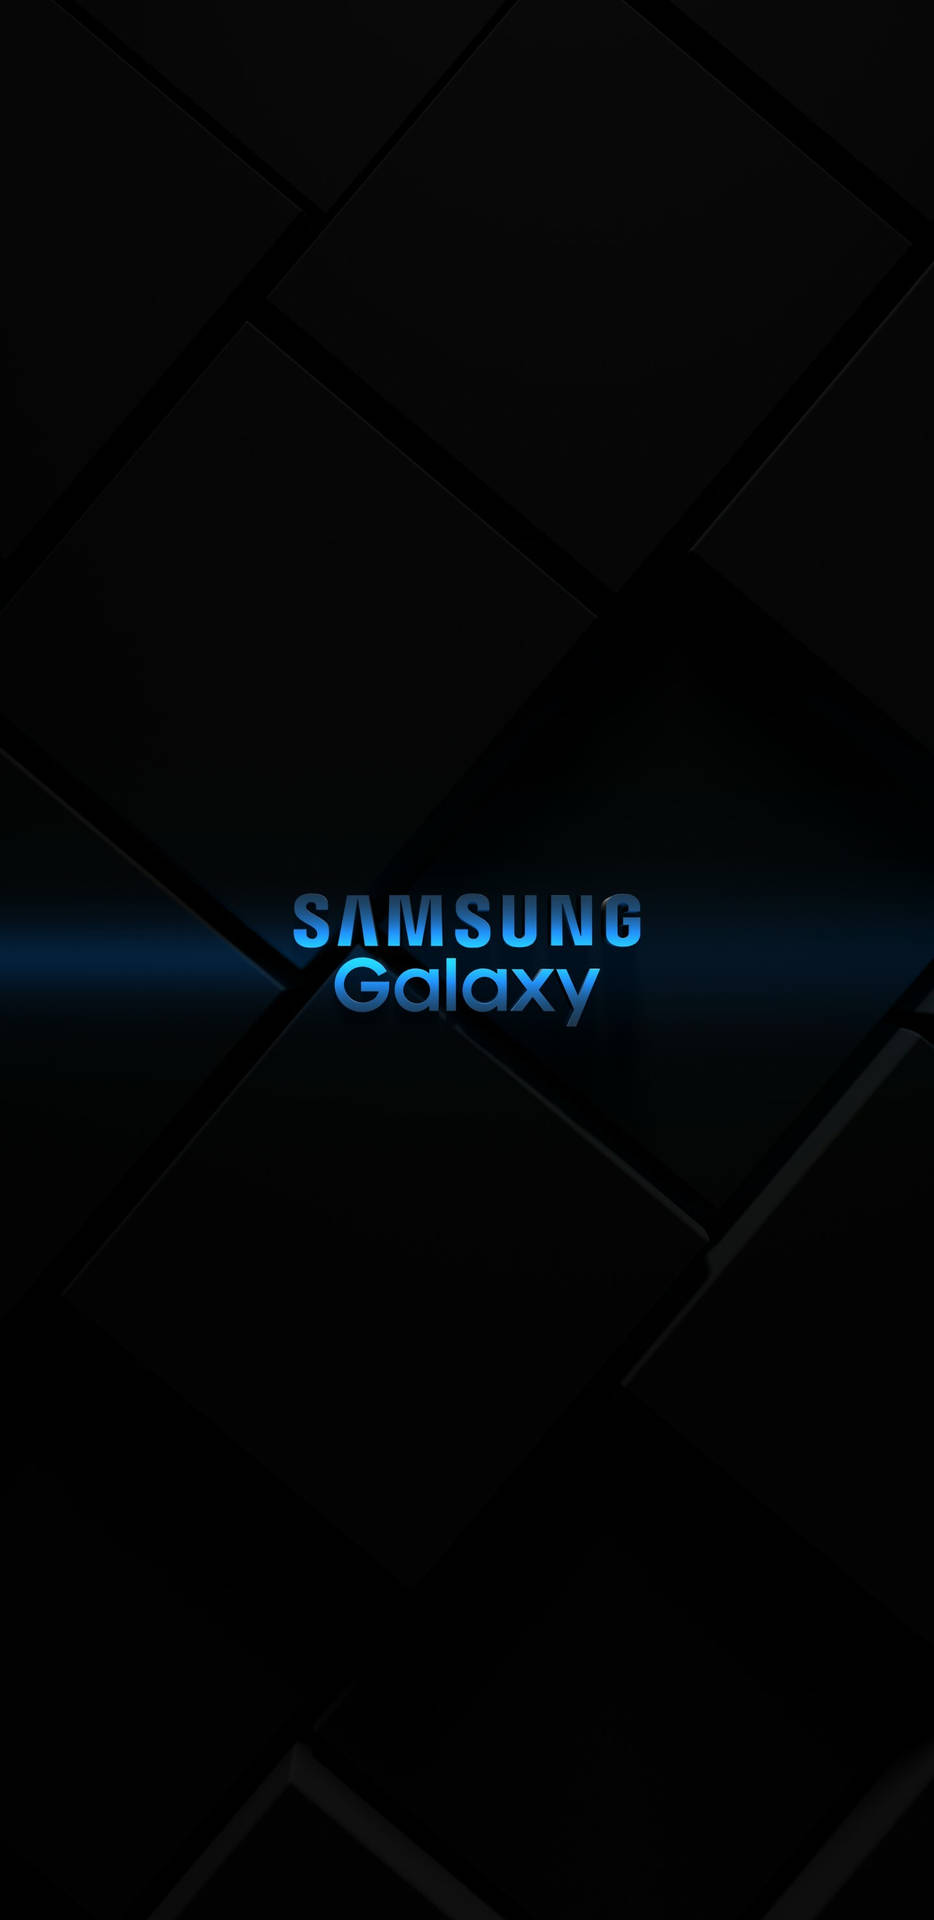 Samsung Galaxy 4k Logo Wallpaper